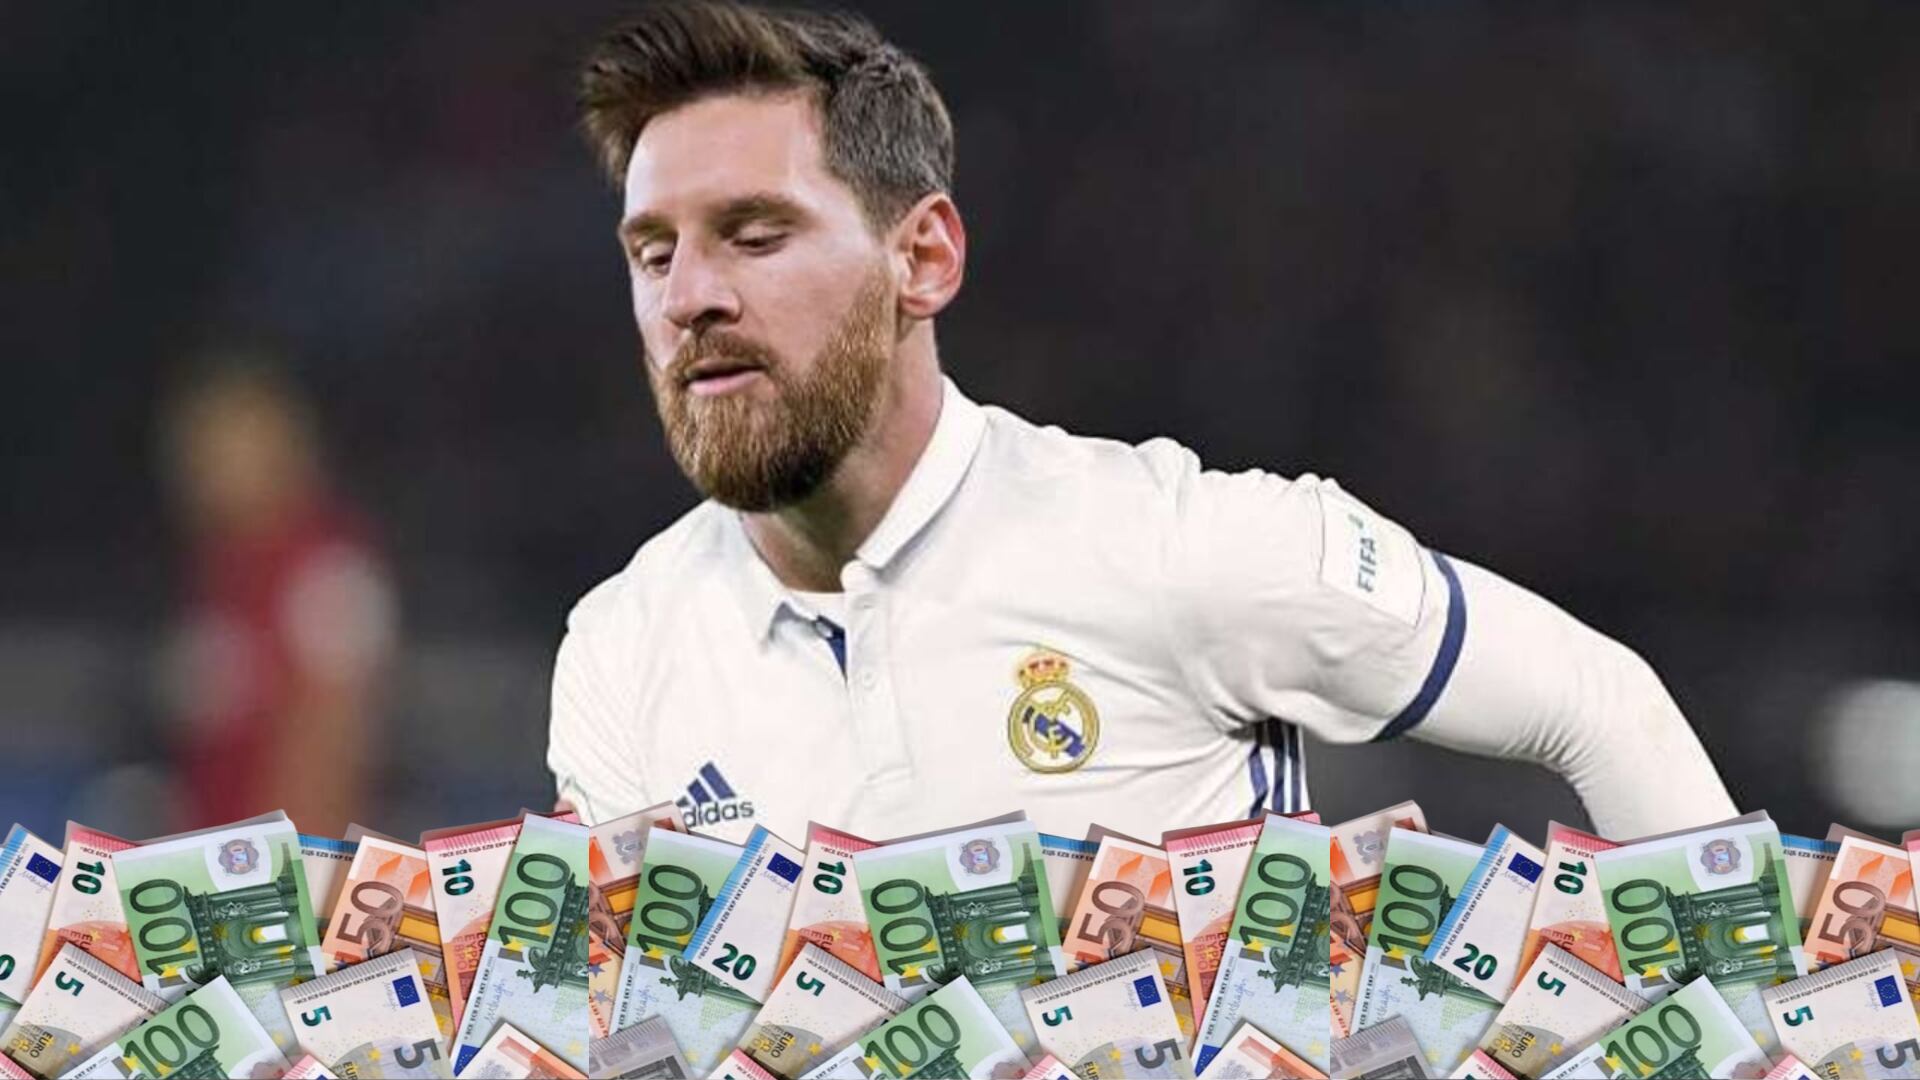 Le llaman nuevo Messi, vale 130 millones y Adidas pidió al Madrid que lo fiche